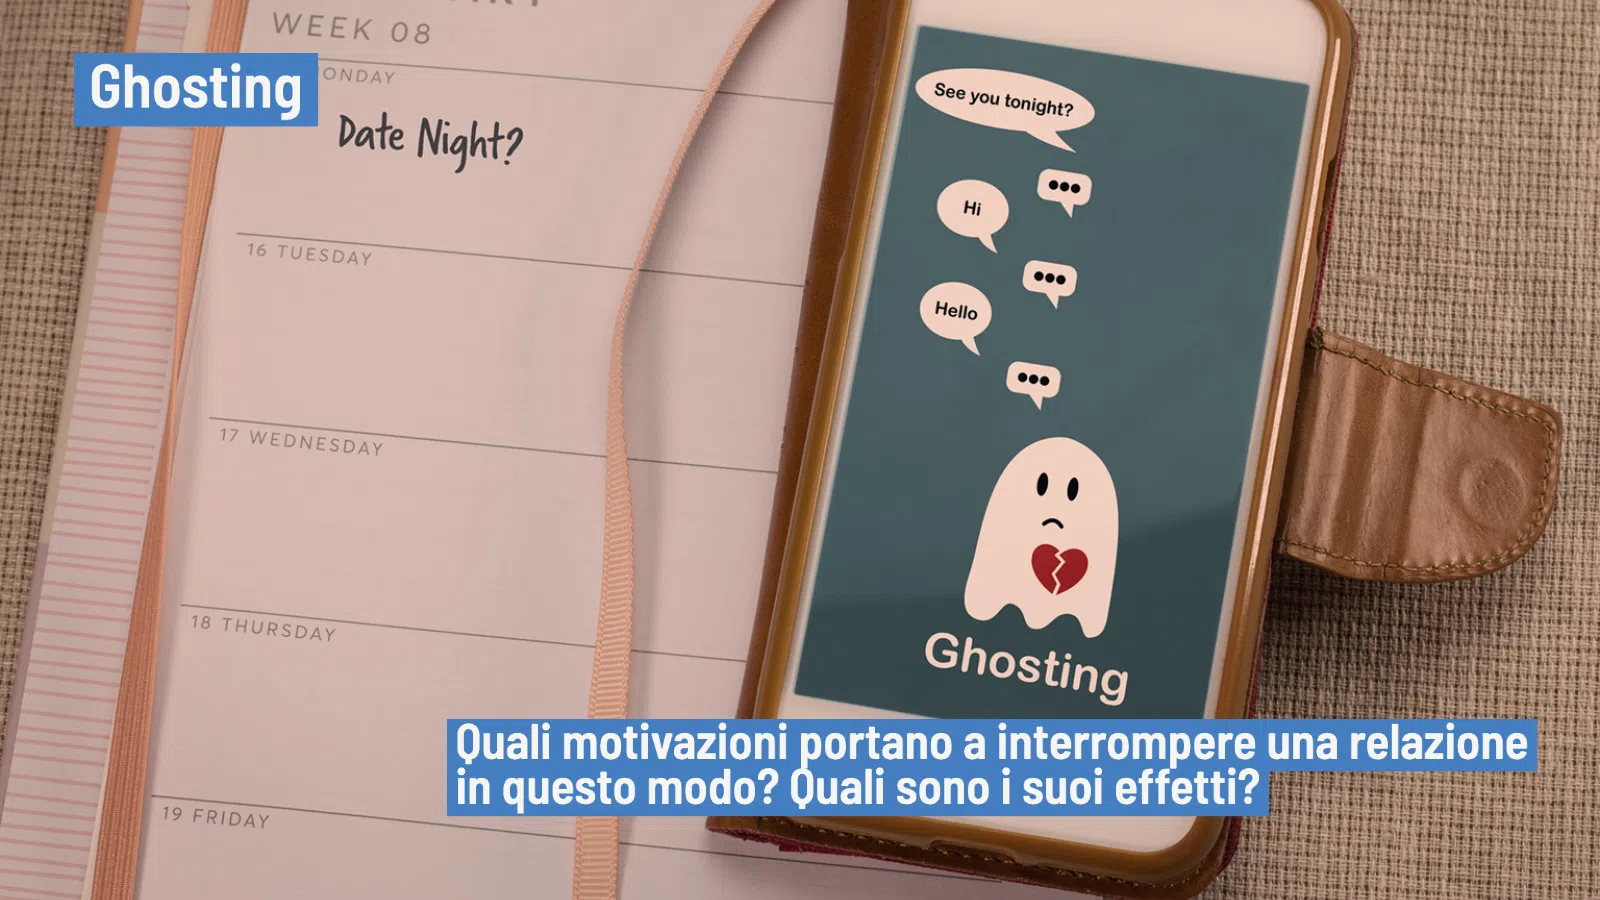 Ghosting e dating app: il rifiuto e il vissuto emotivo delle persone coinvolte